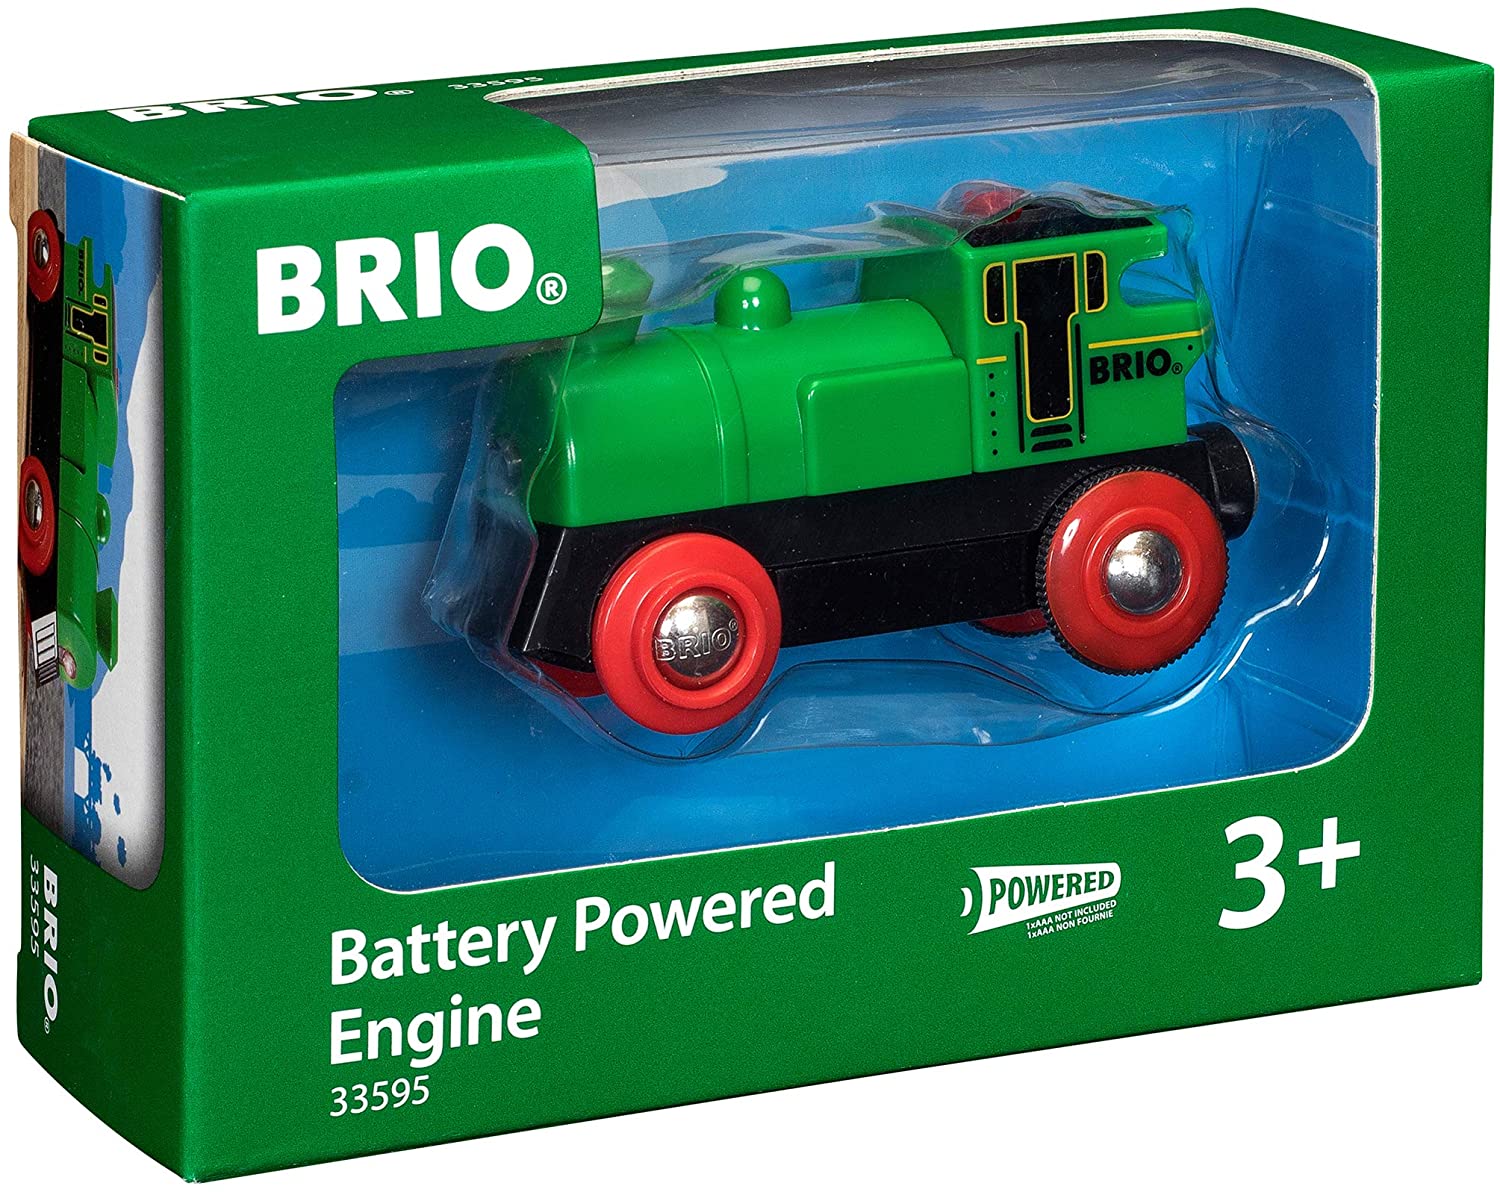 Brio locomotiva a batterie - BRIO